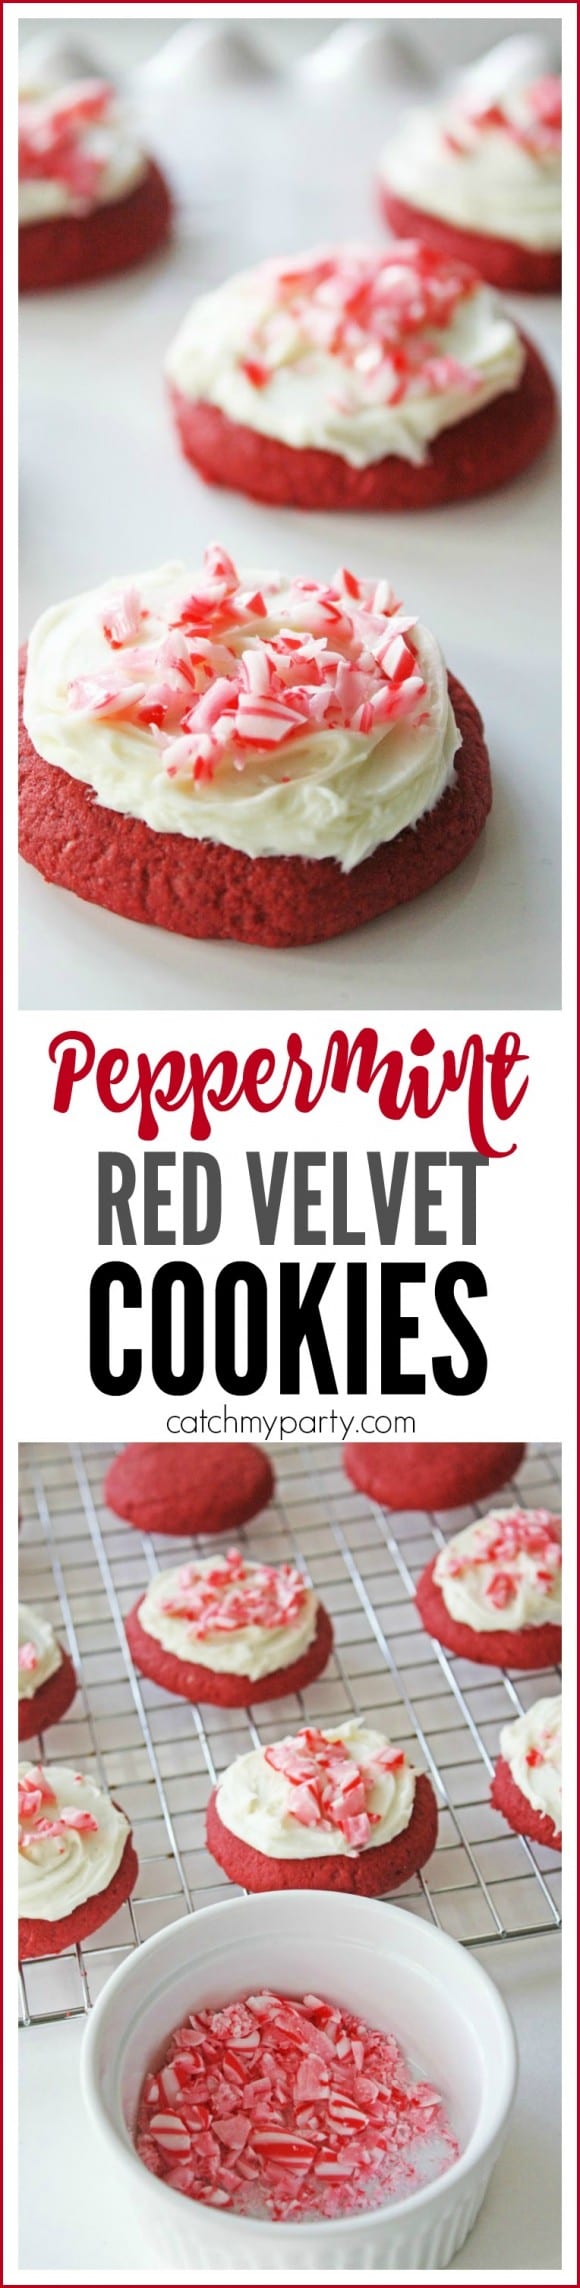 red-velvet-cookies-peppermint-buttercream2